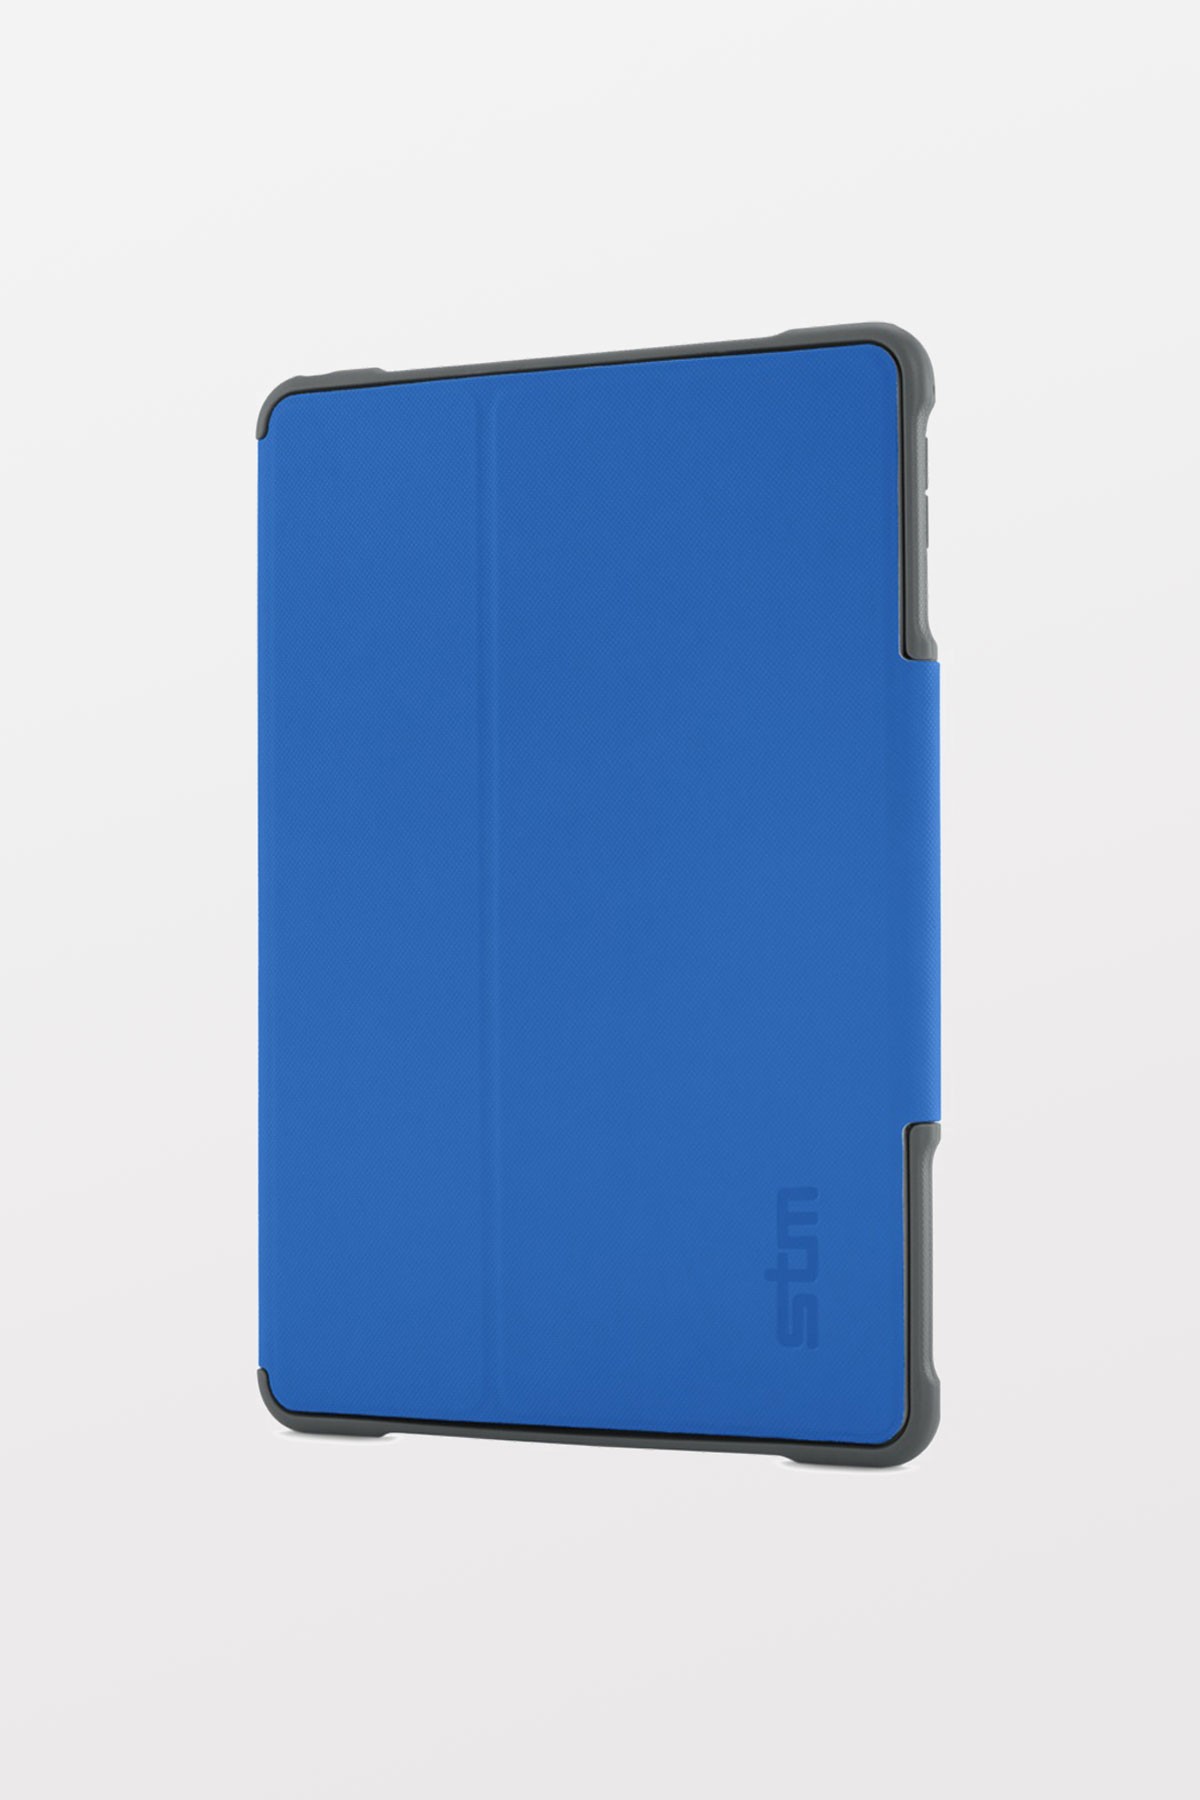 STM Dux for iPad Air - Blue